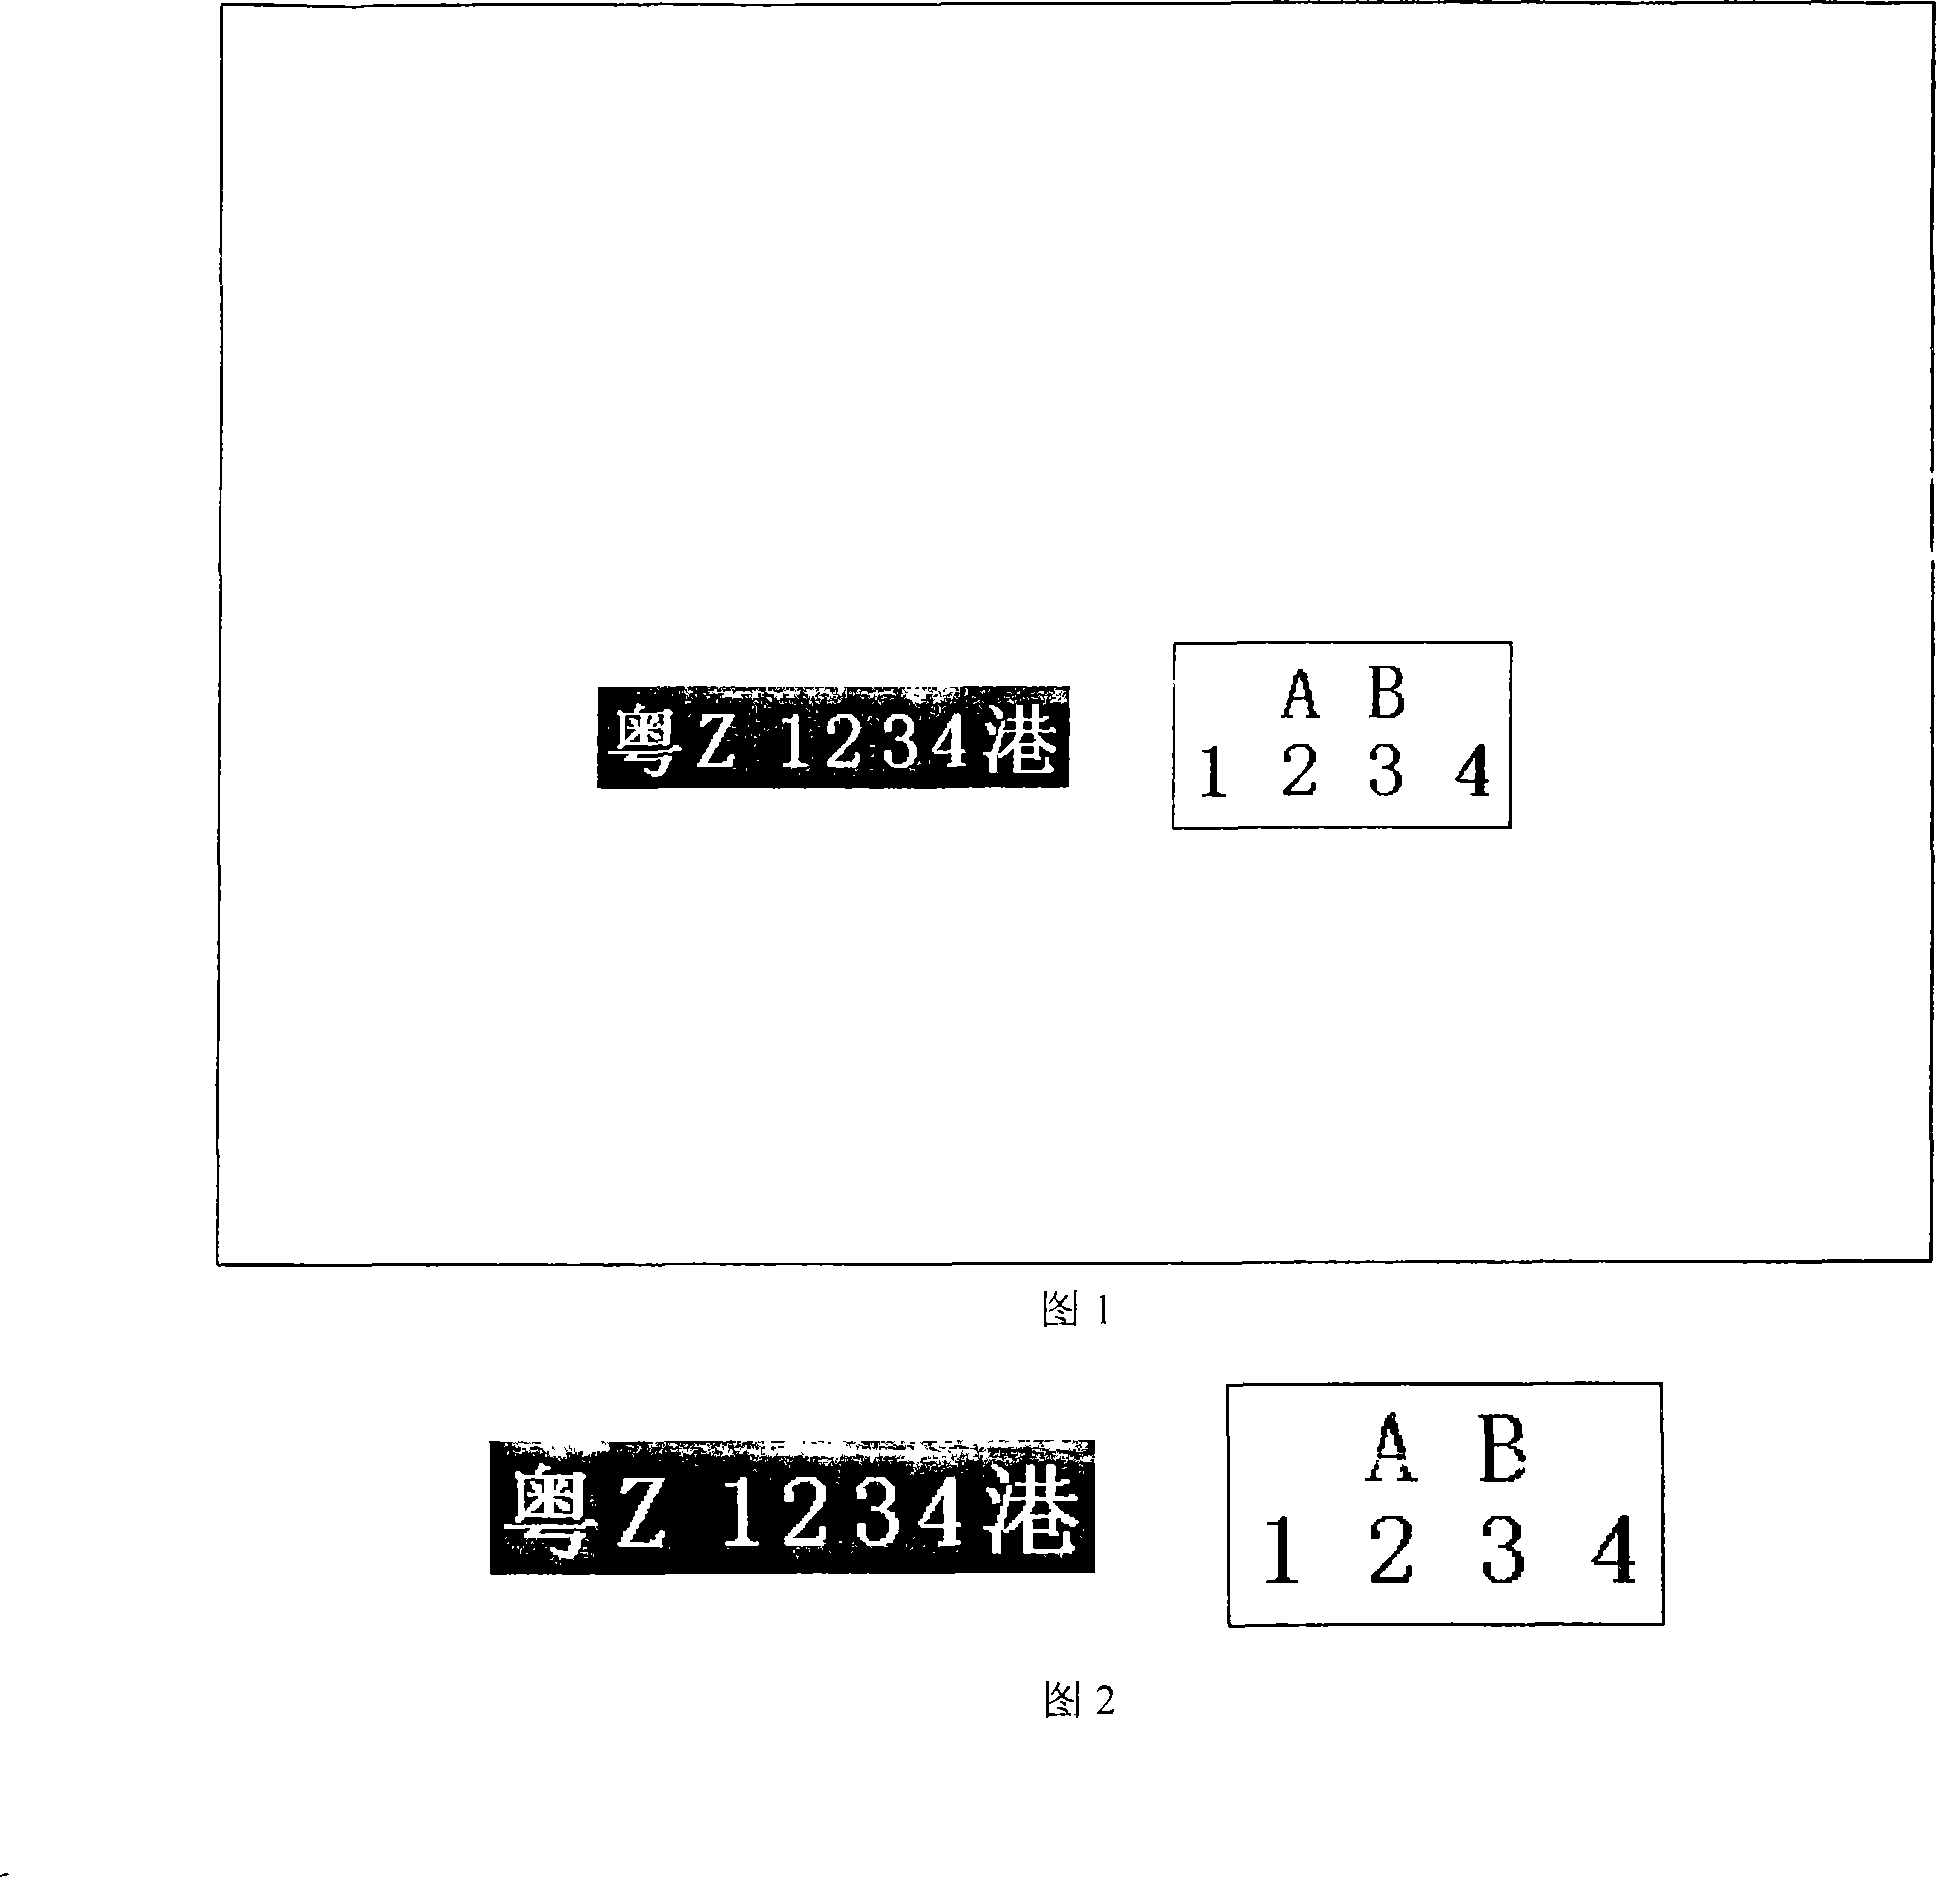 Guangdong and Hong Kong license plate locating method